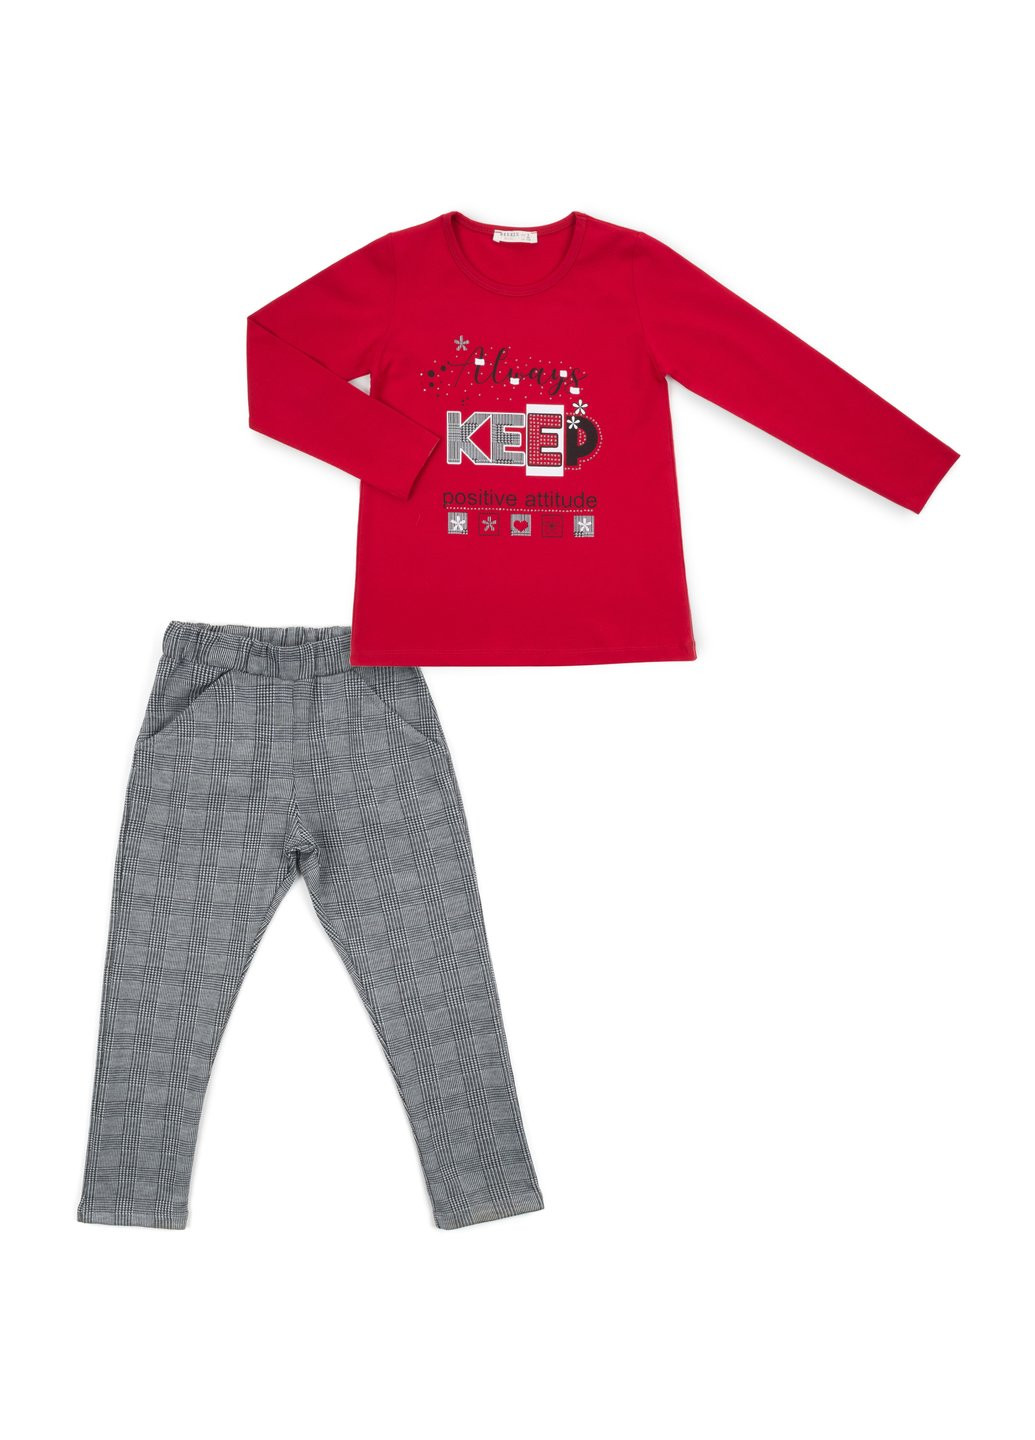 Комбинированный демисезонный набор детской одежды "always keep positive attitude" (13591-134g-red) Breeze